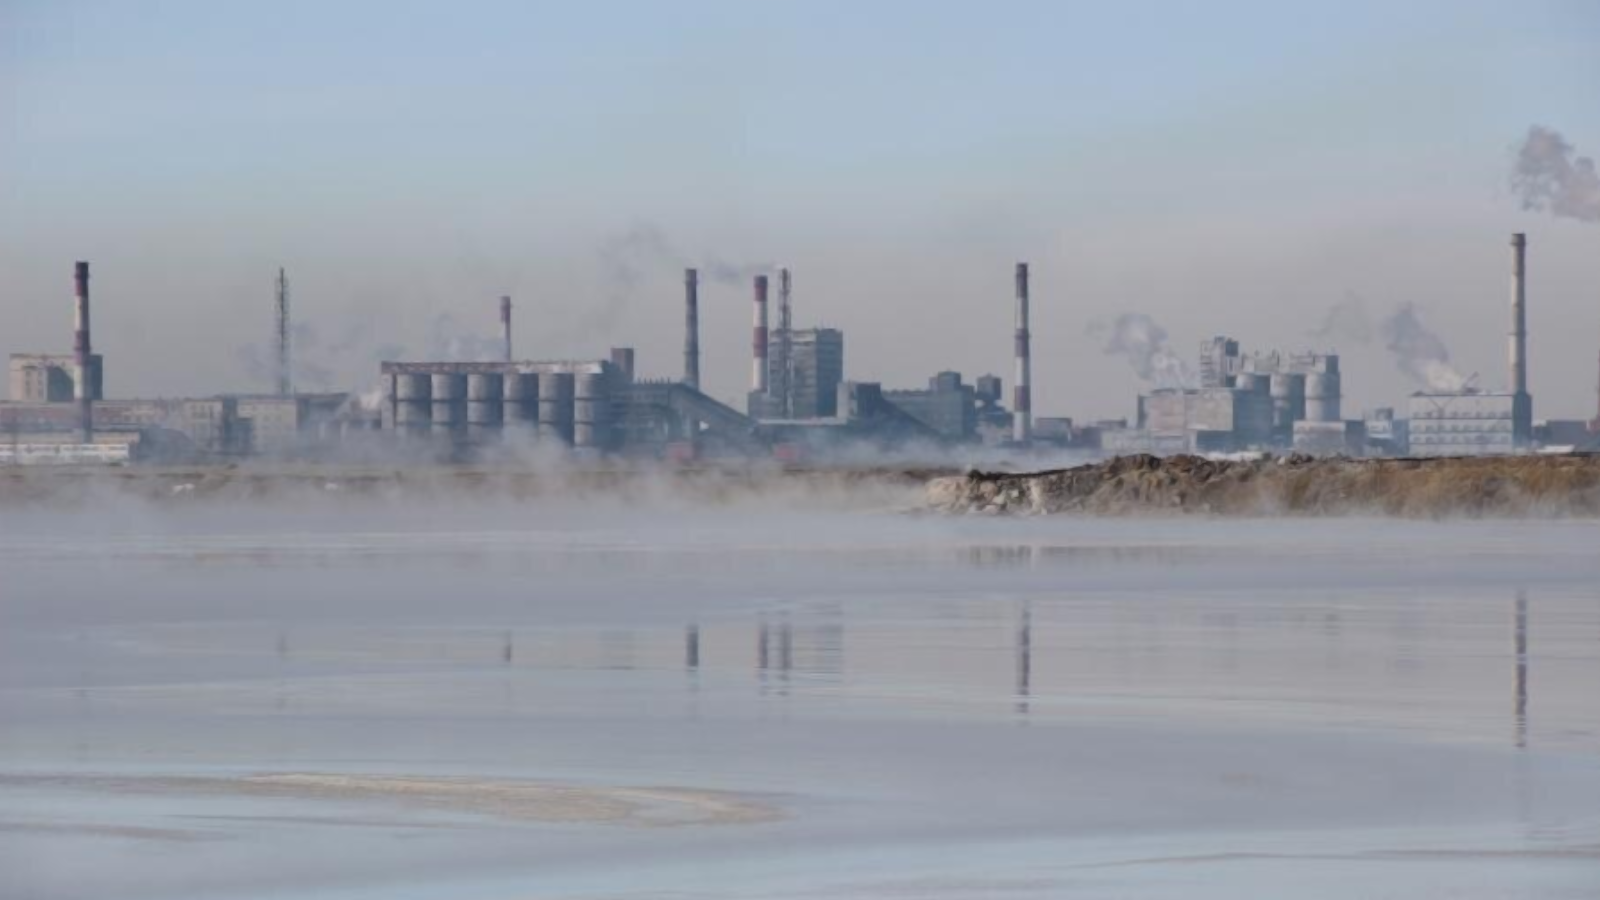 «Башкирская содовая компания» сбрасывает в реку Белая загрязняющие вещества законно, решил российский суд